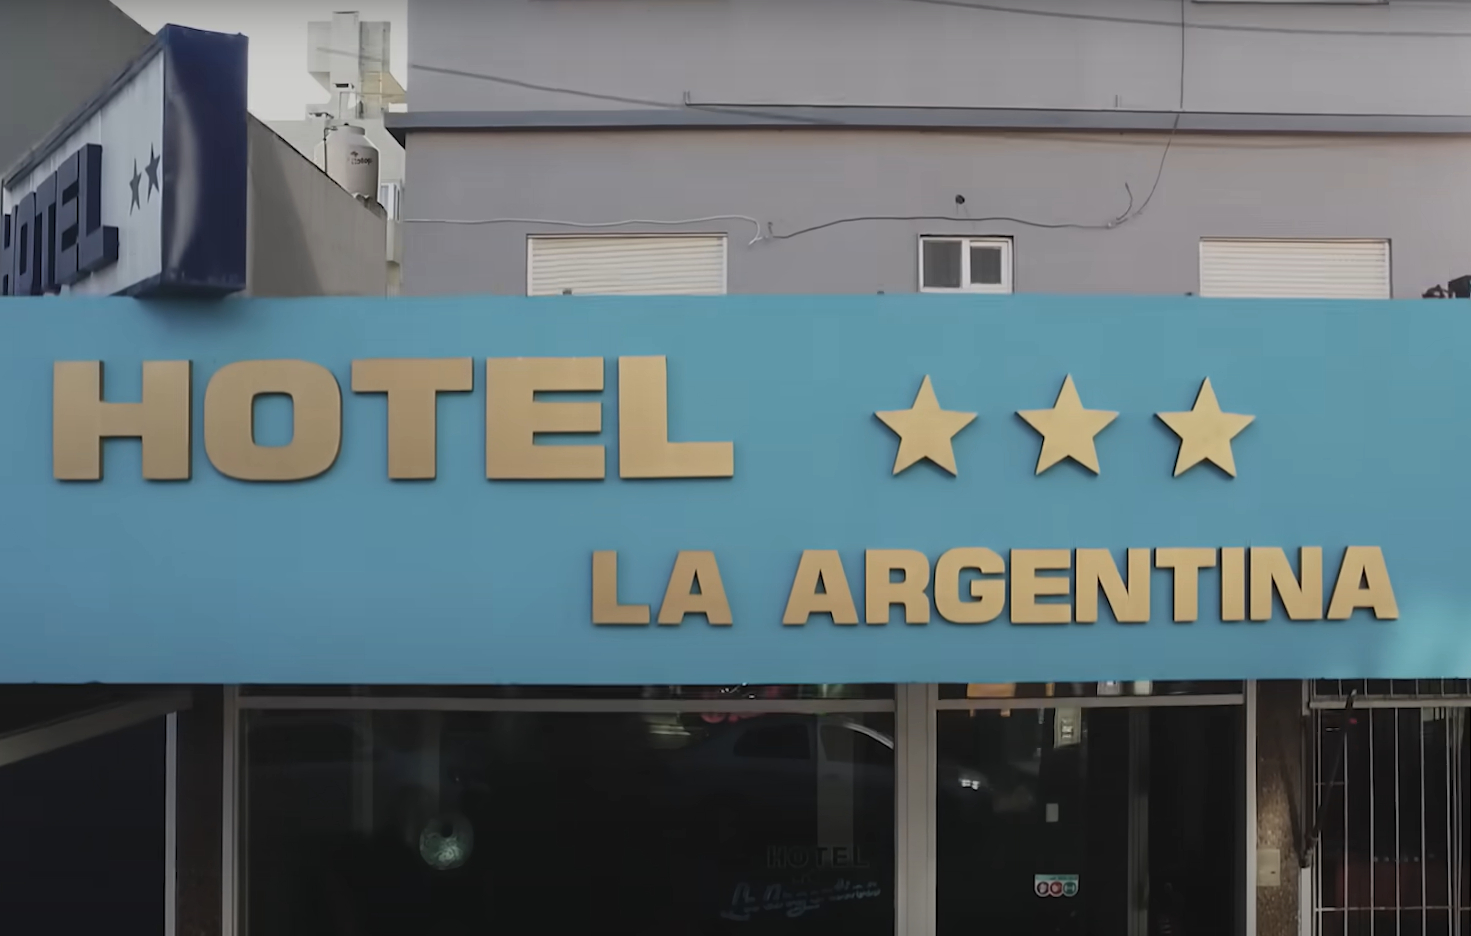 Un hotel que se llame La Argentina no puede tener dos estrellas